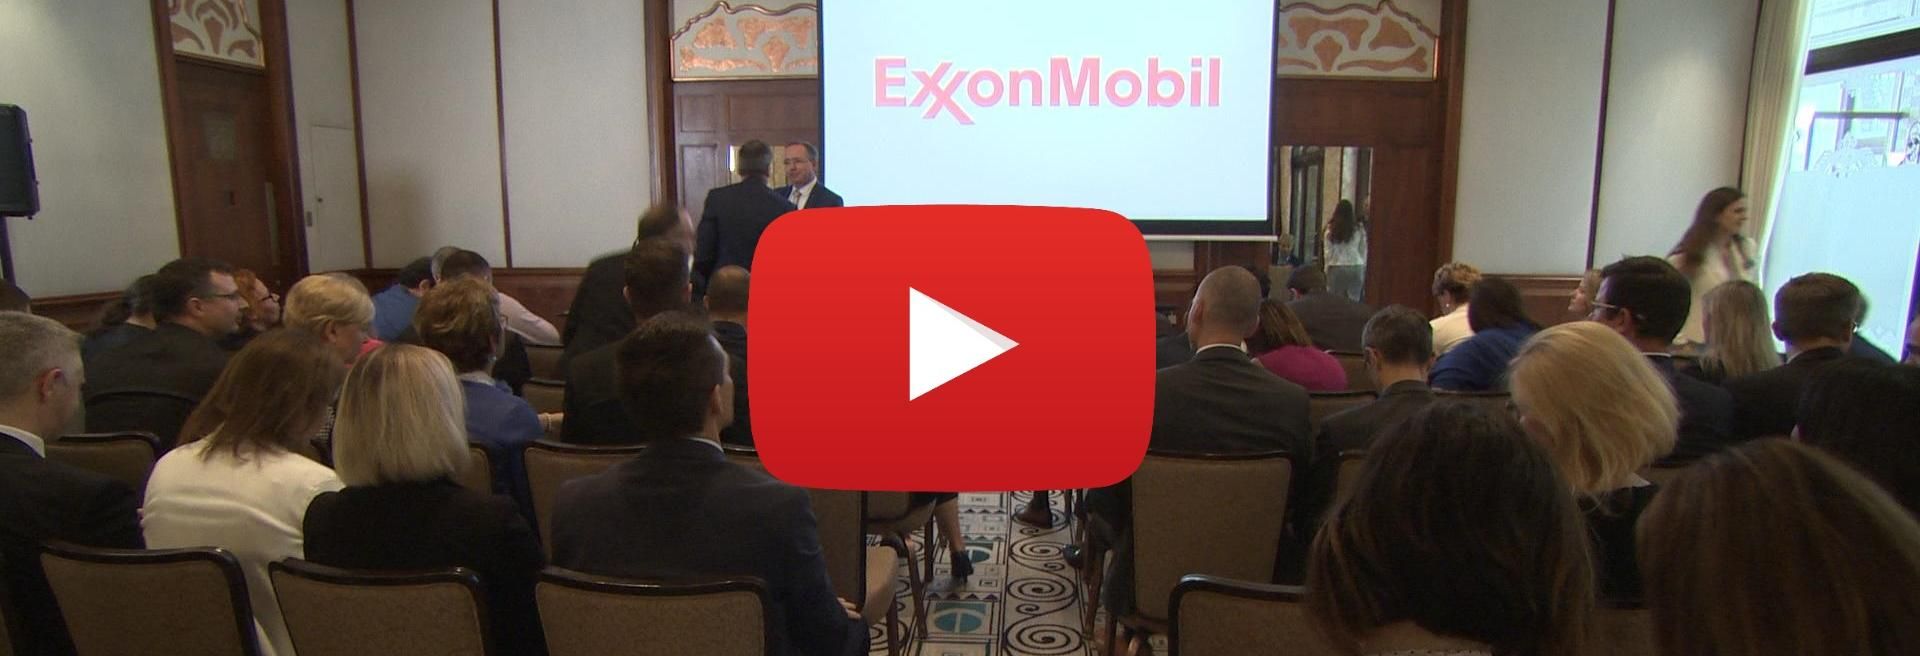 Már 15 éves sikertörténet az ExxonMobil és Magyarország együttműködése - VIDEÓRIPORT